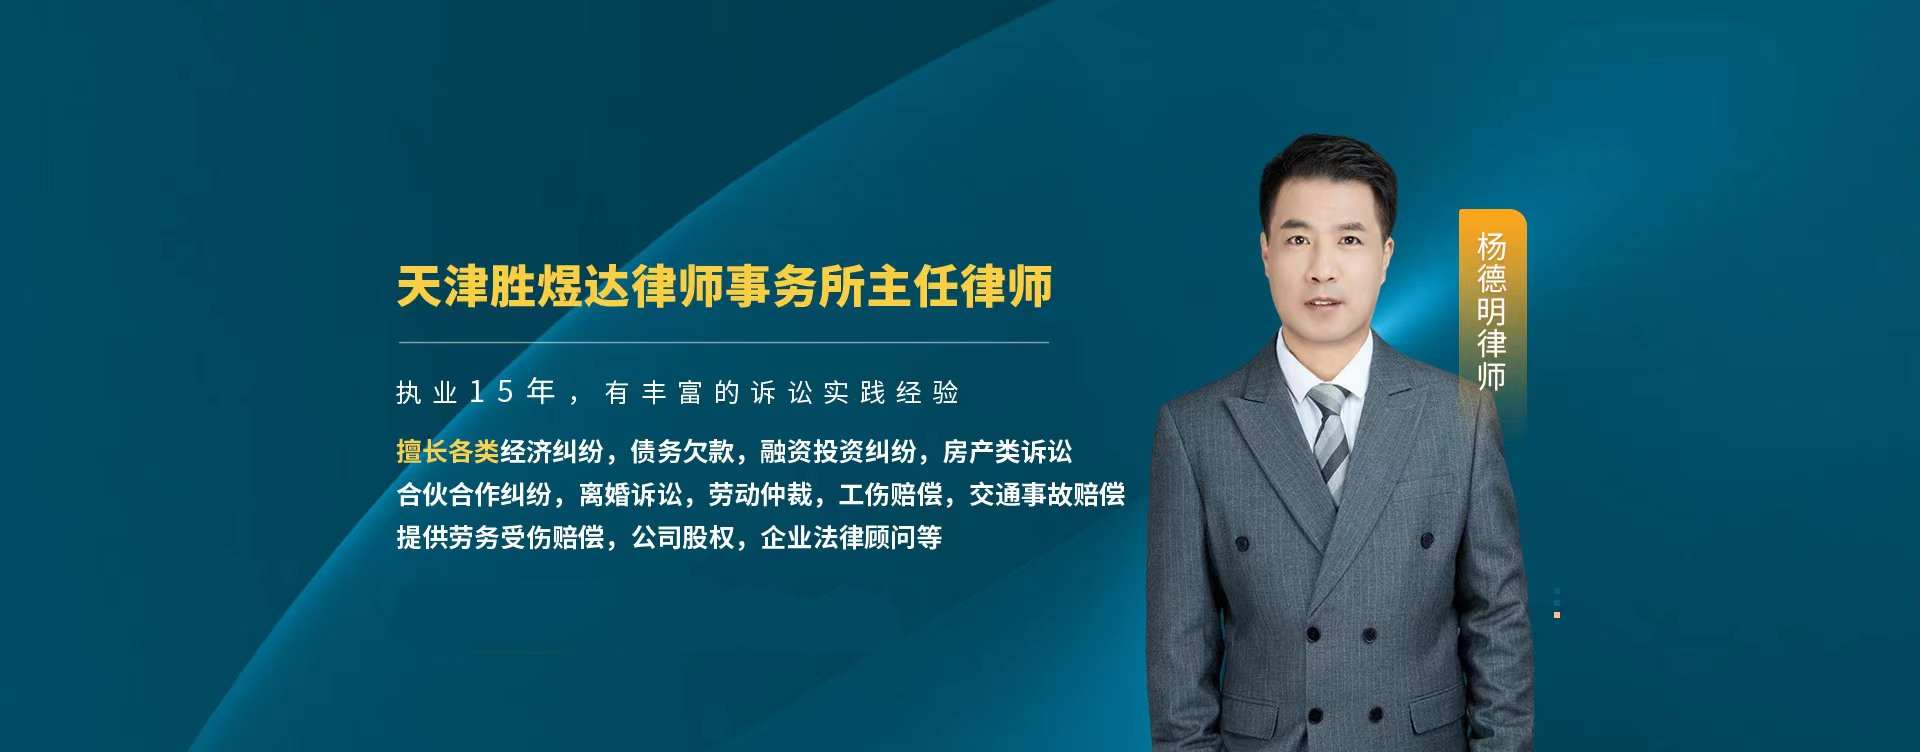 天津胜煜达律所杨德明主任律所较近办理了一个劳动地点变更引起的劳动纠纷案件